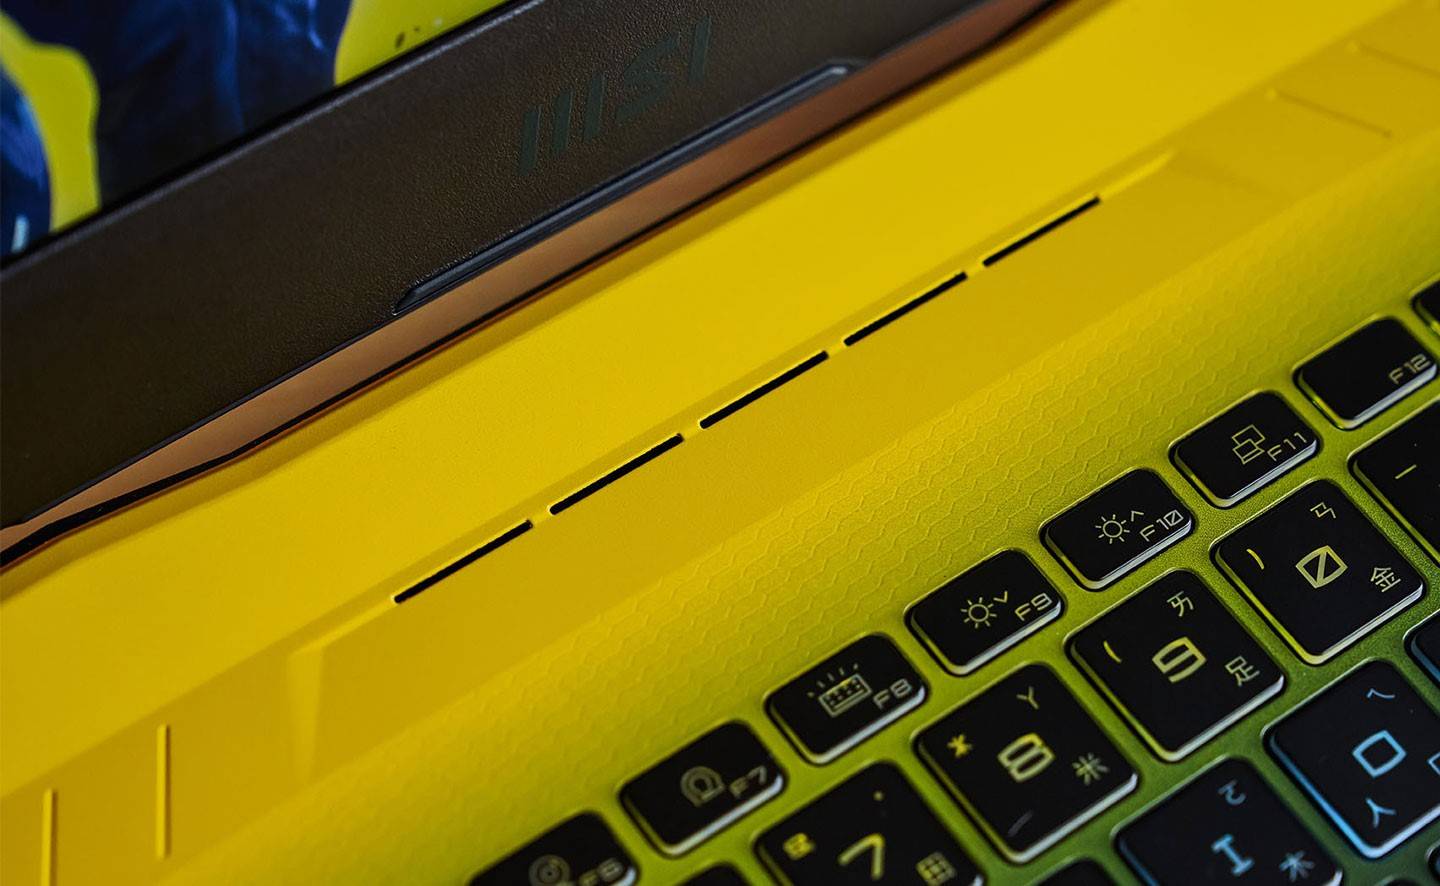 键盘上方布满了六角格蜂巢纹饰，让机身散发出浓浓的科技感。